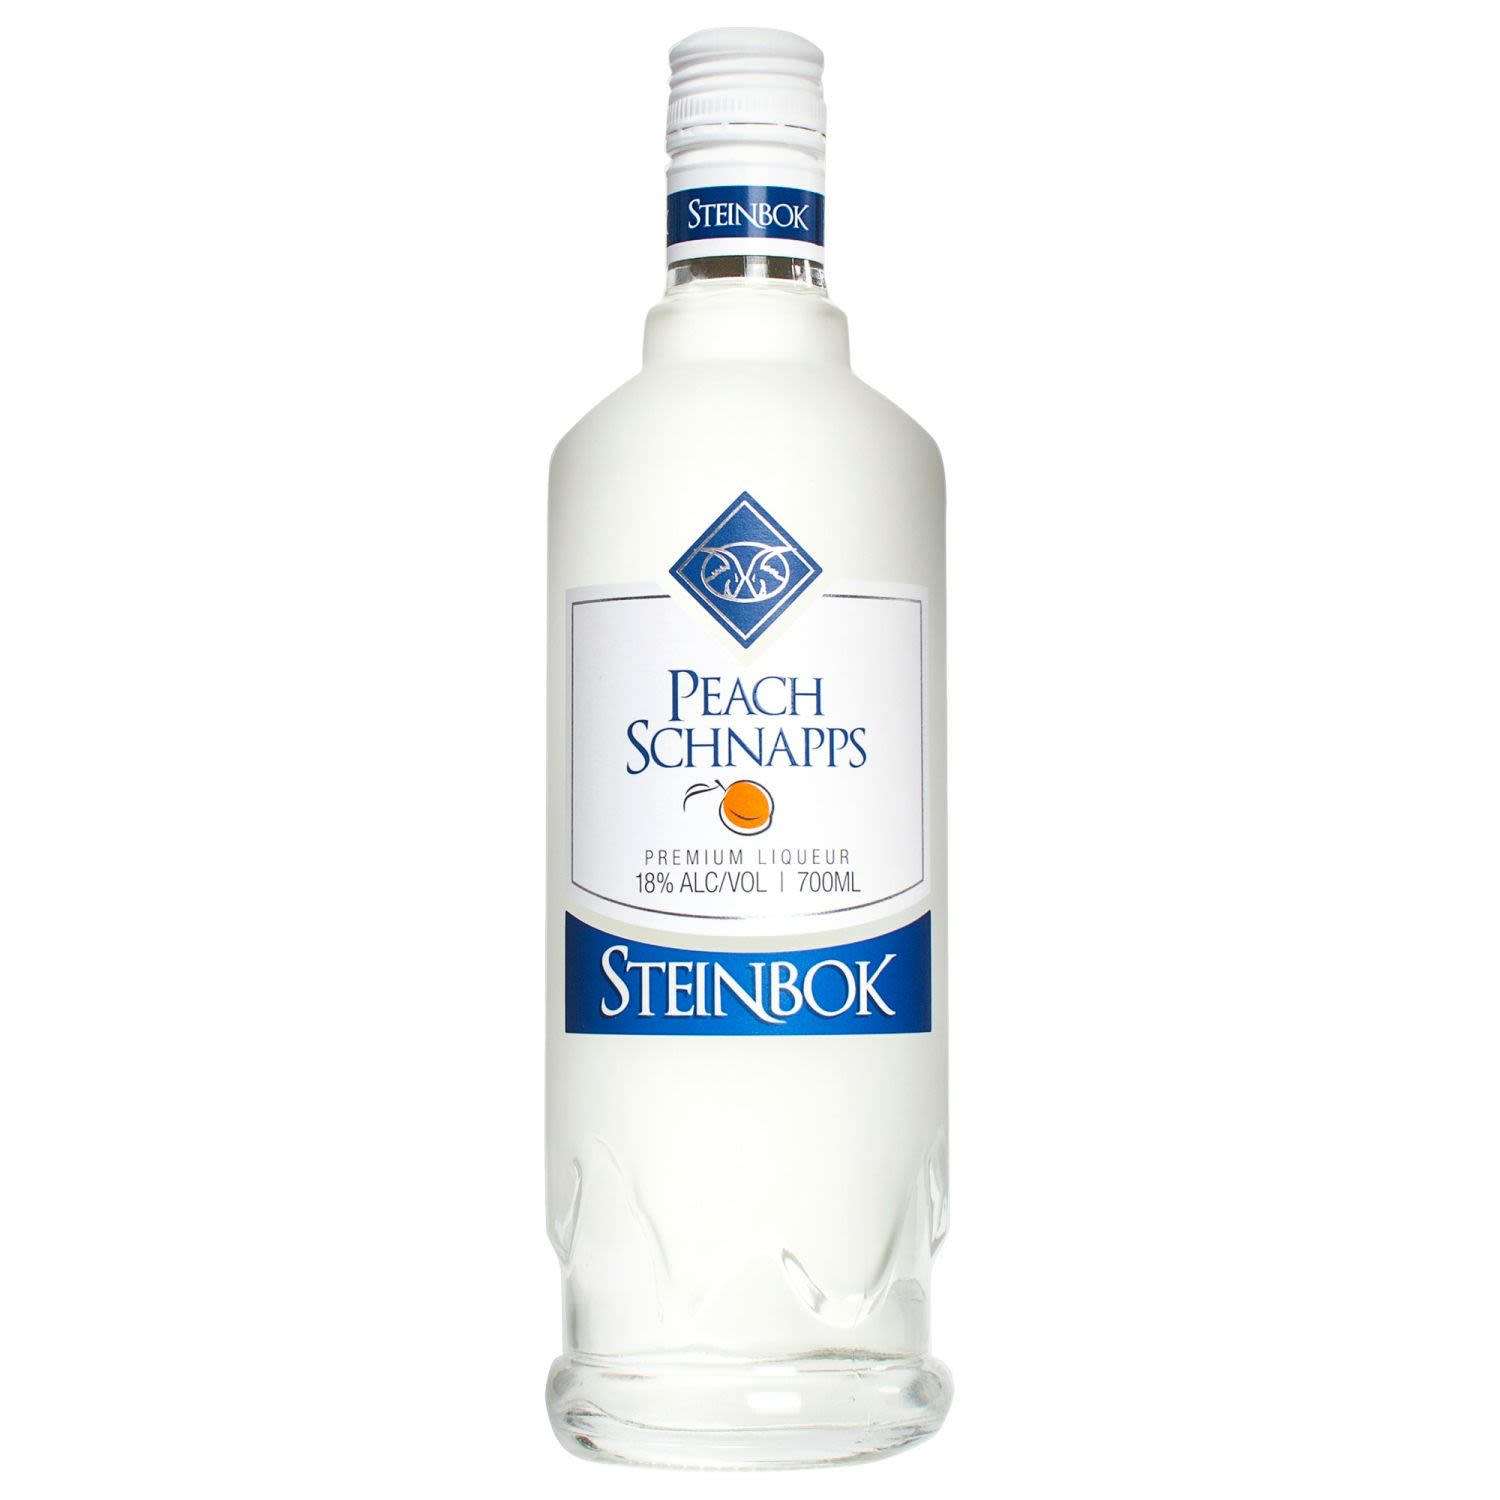 Steinbok Peach Schnapps 700mL Bottle